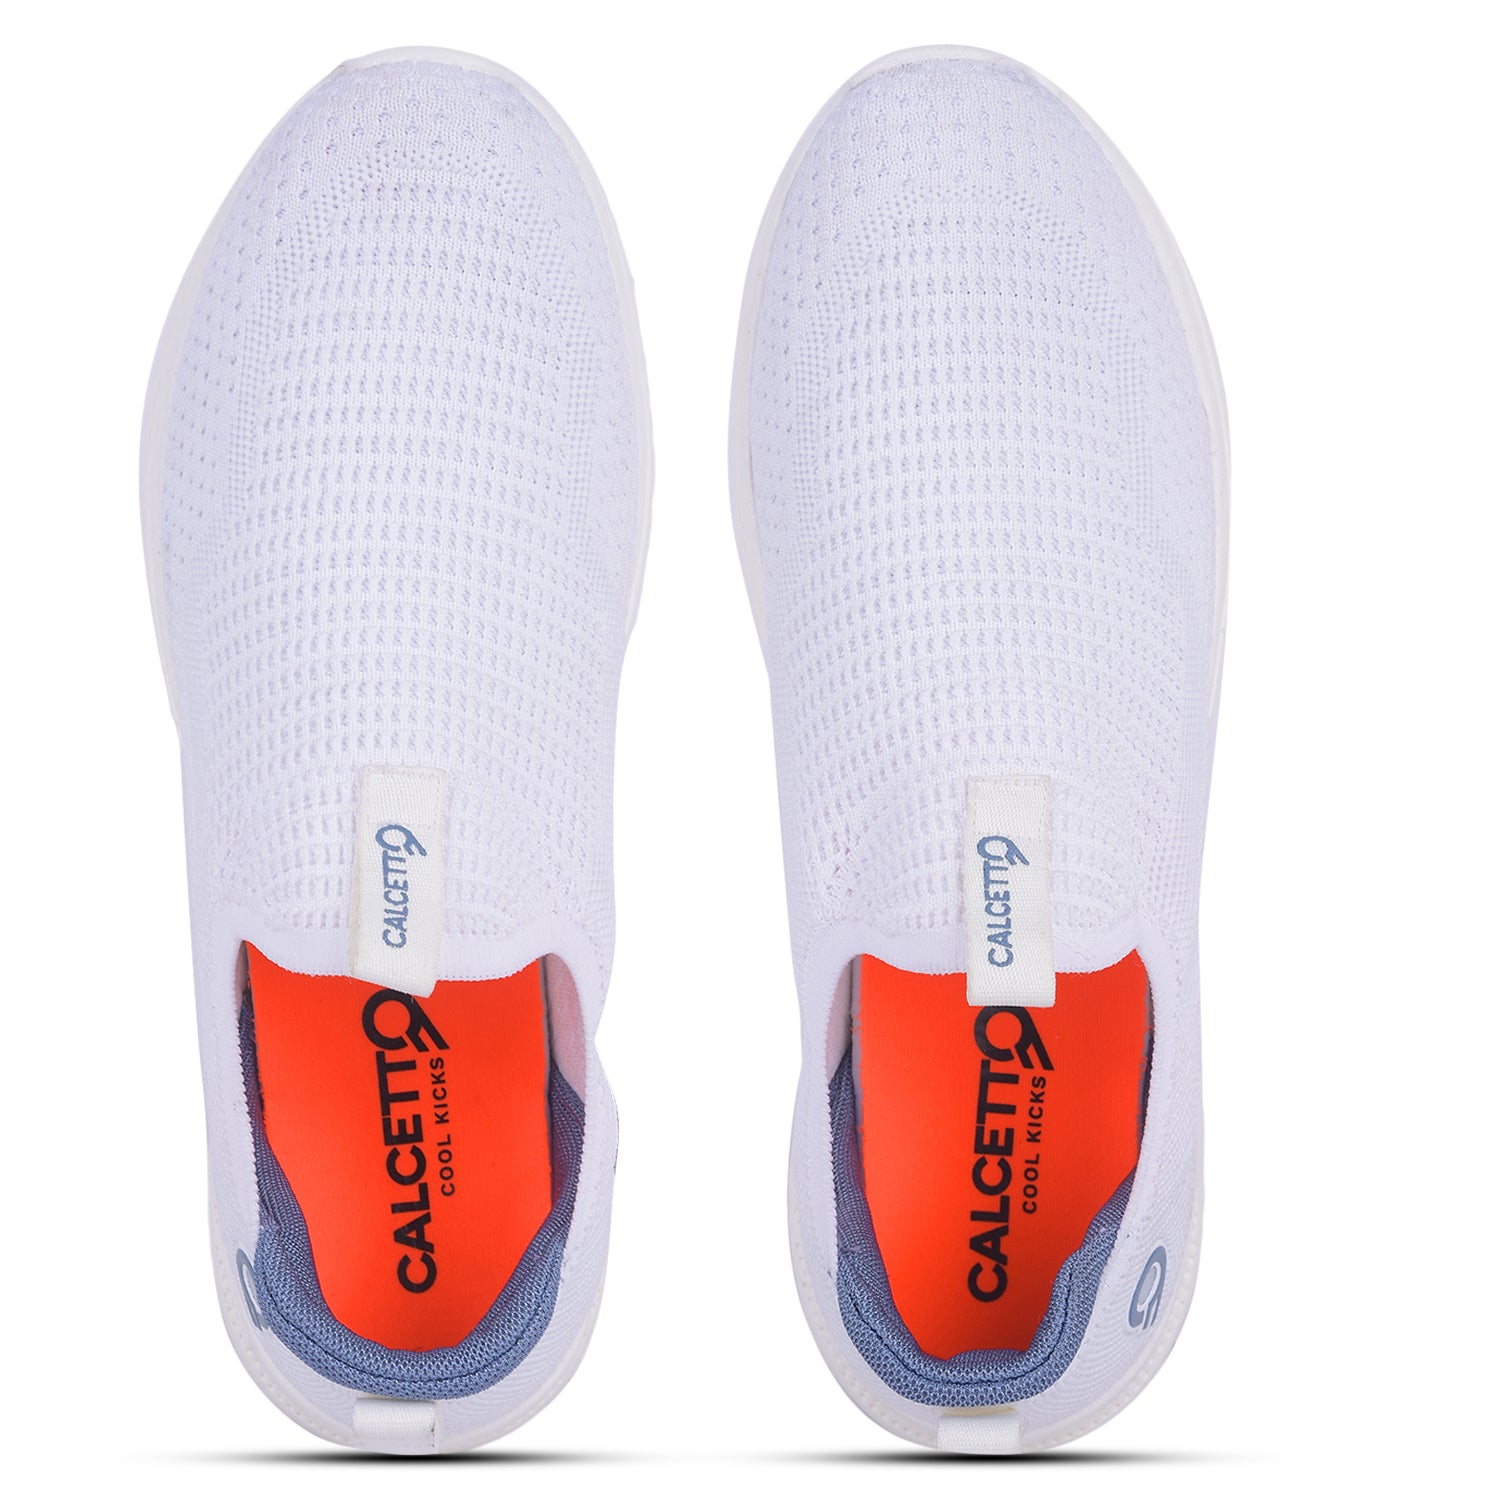 Calcetto CLT-2044 White Slip On Shoe For Men